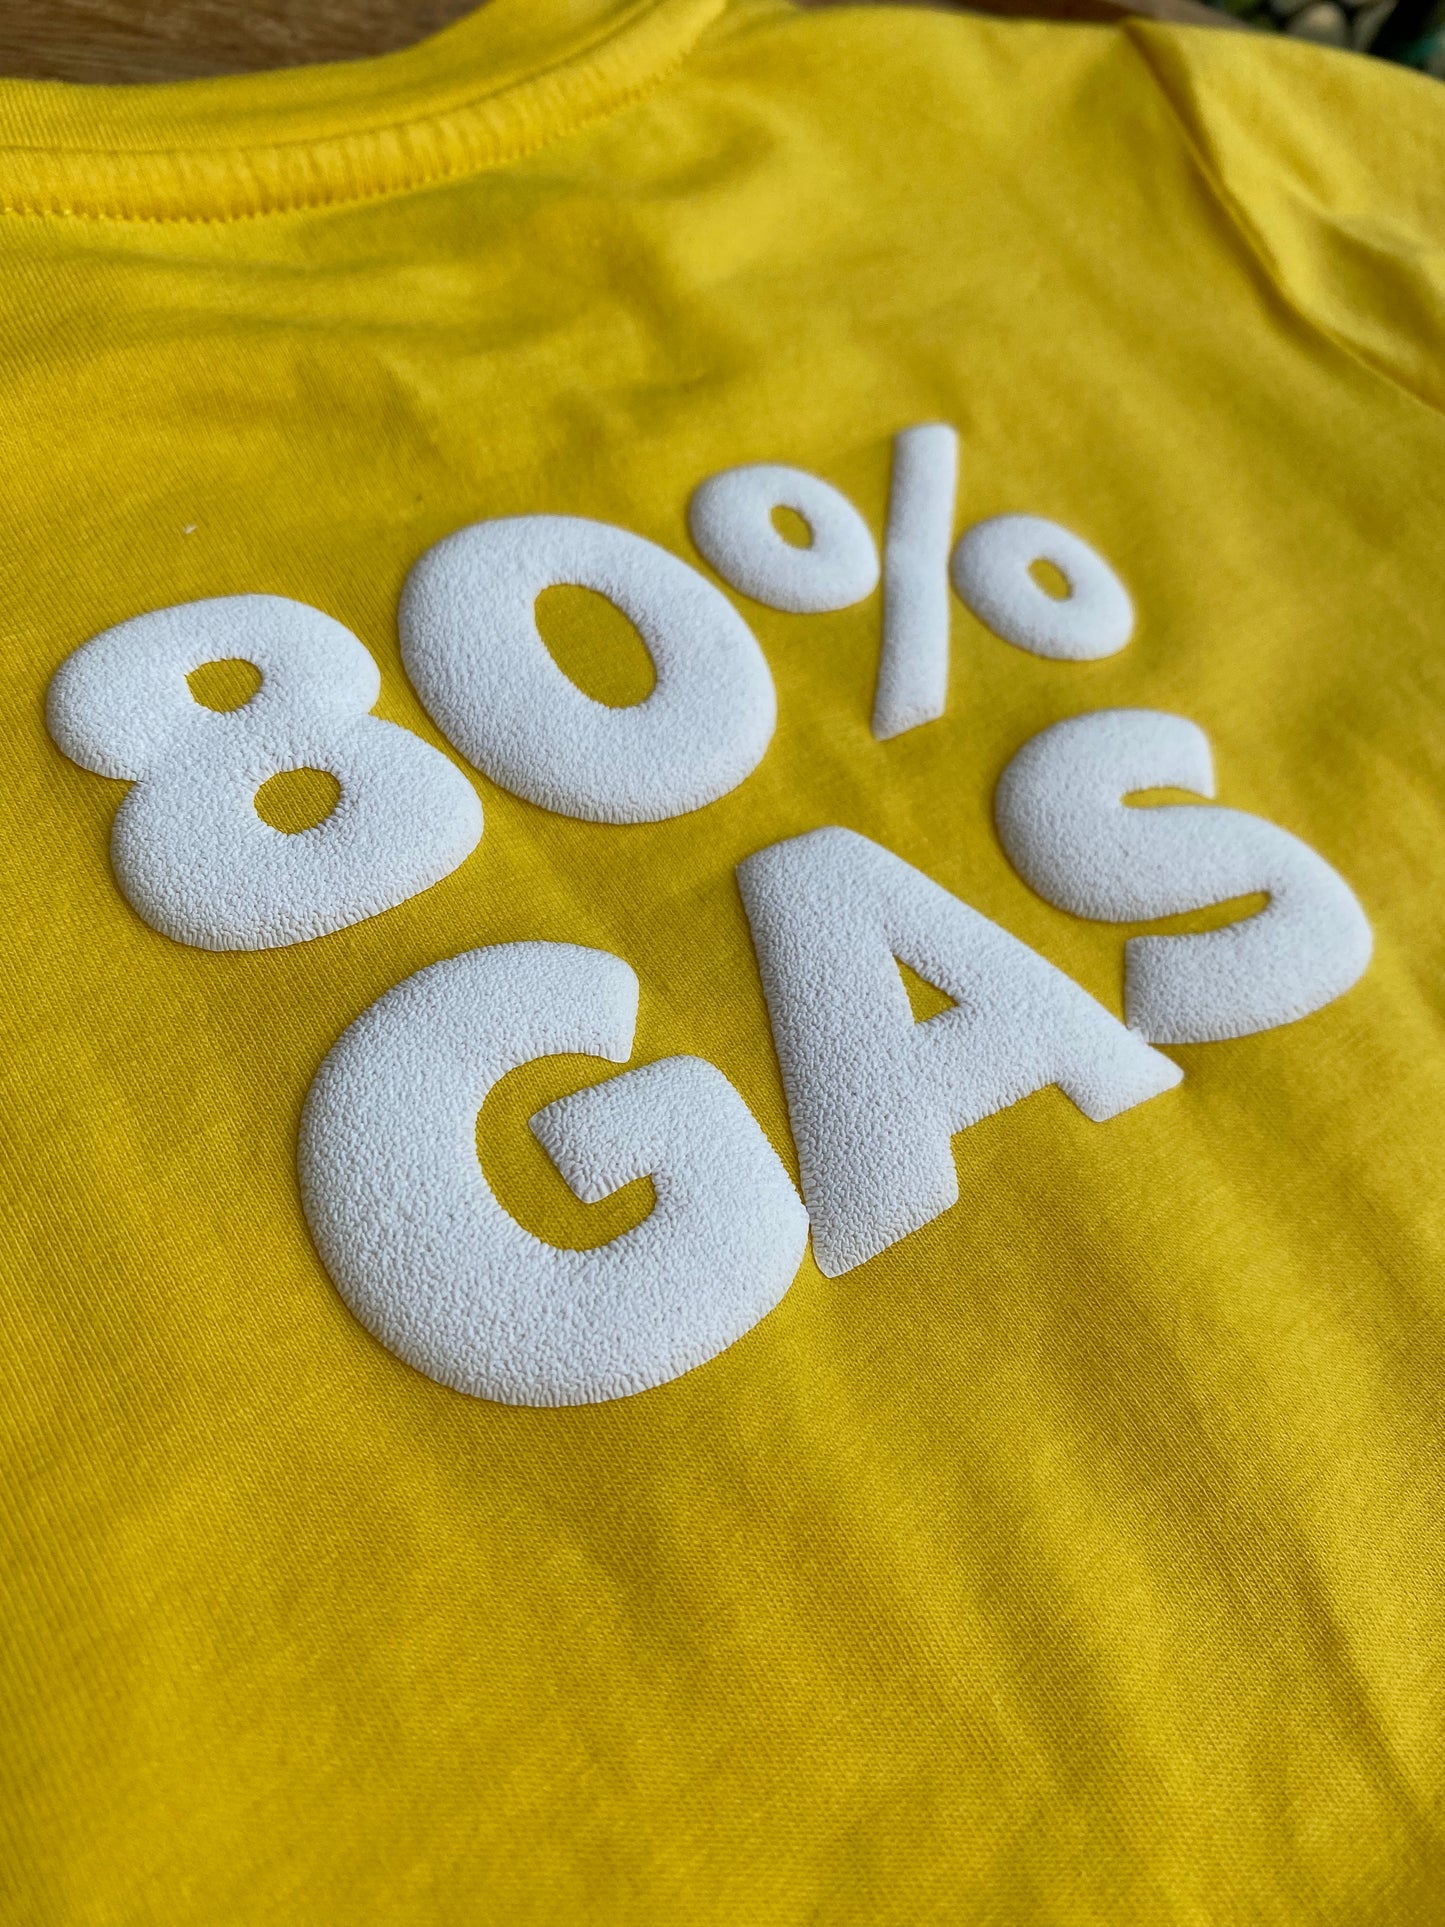 80% Gas Dog Tee